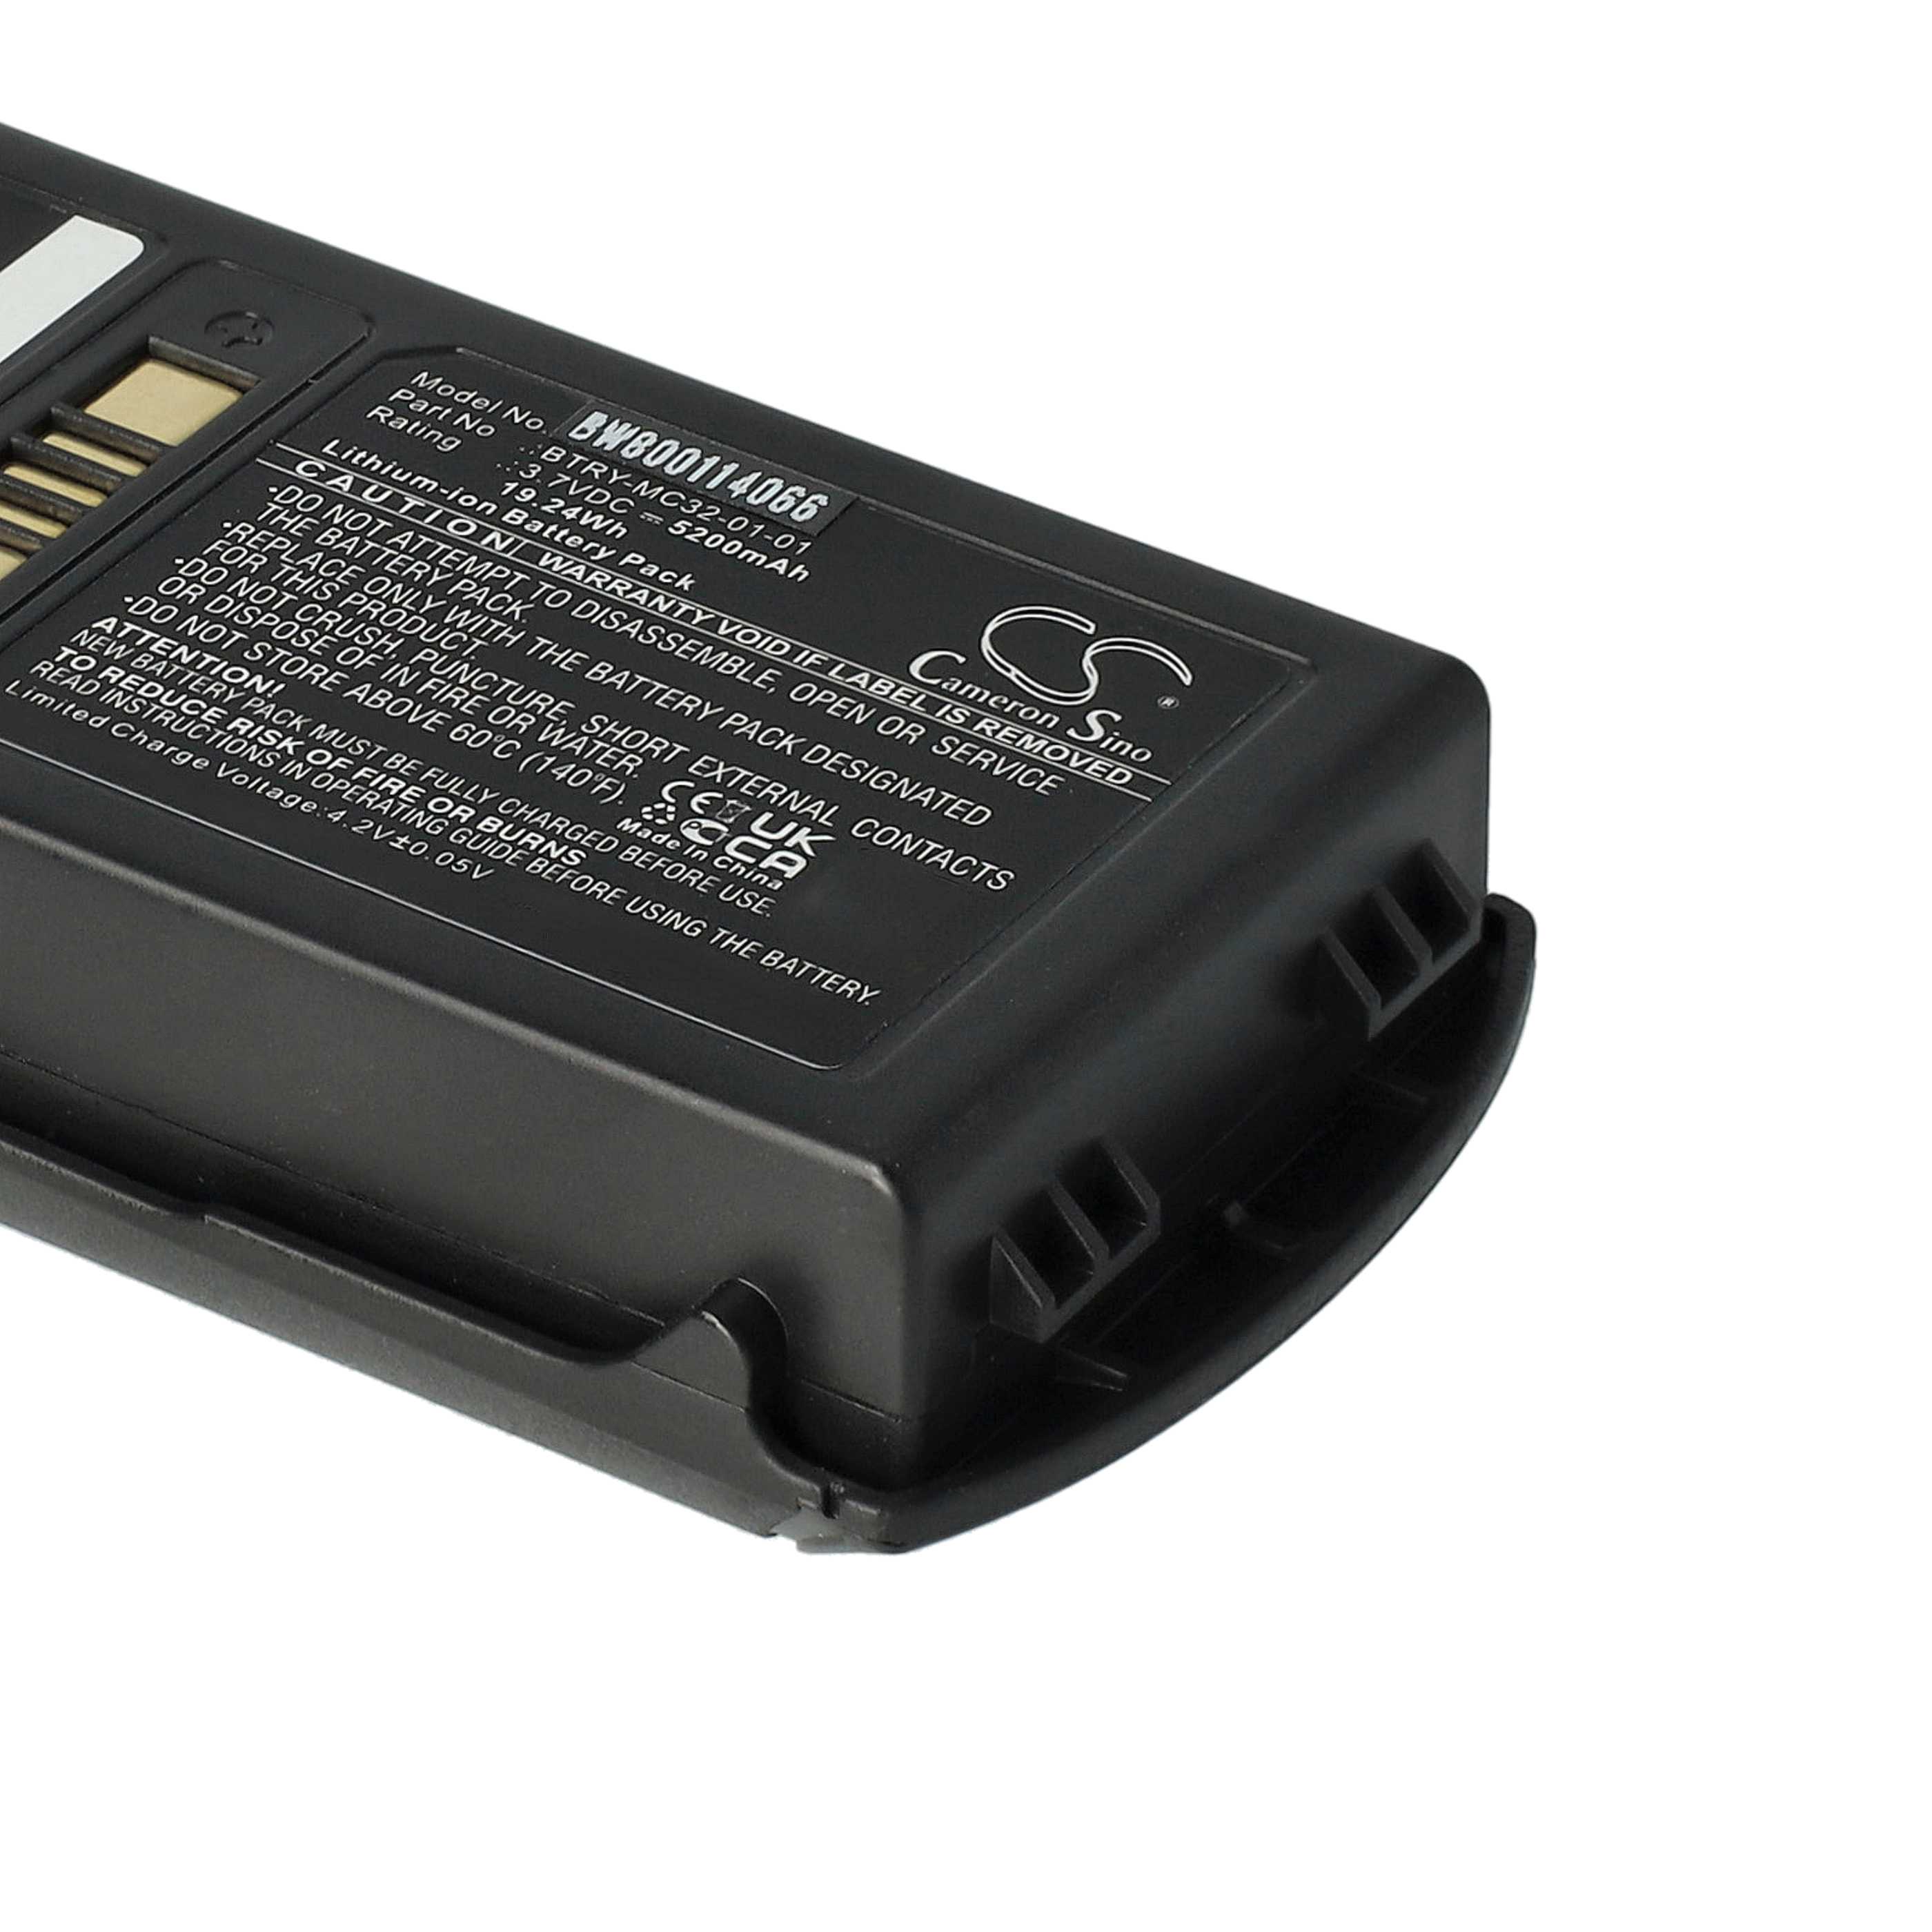 Barcodescanner-Akku als Ersatz für Motorola BTRY-MC32-01-01 - 5200mAh 3,7V Li-Ion